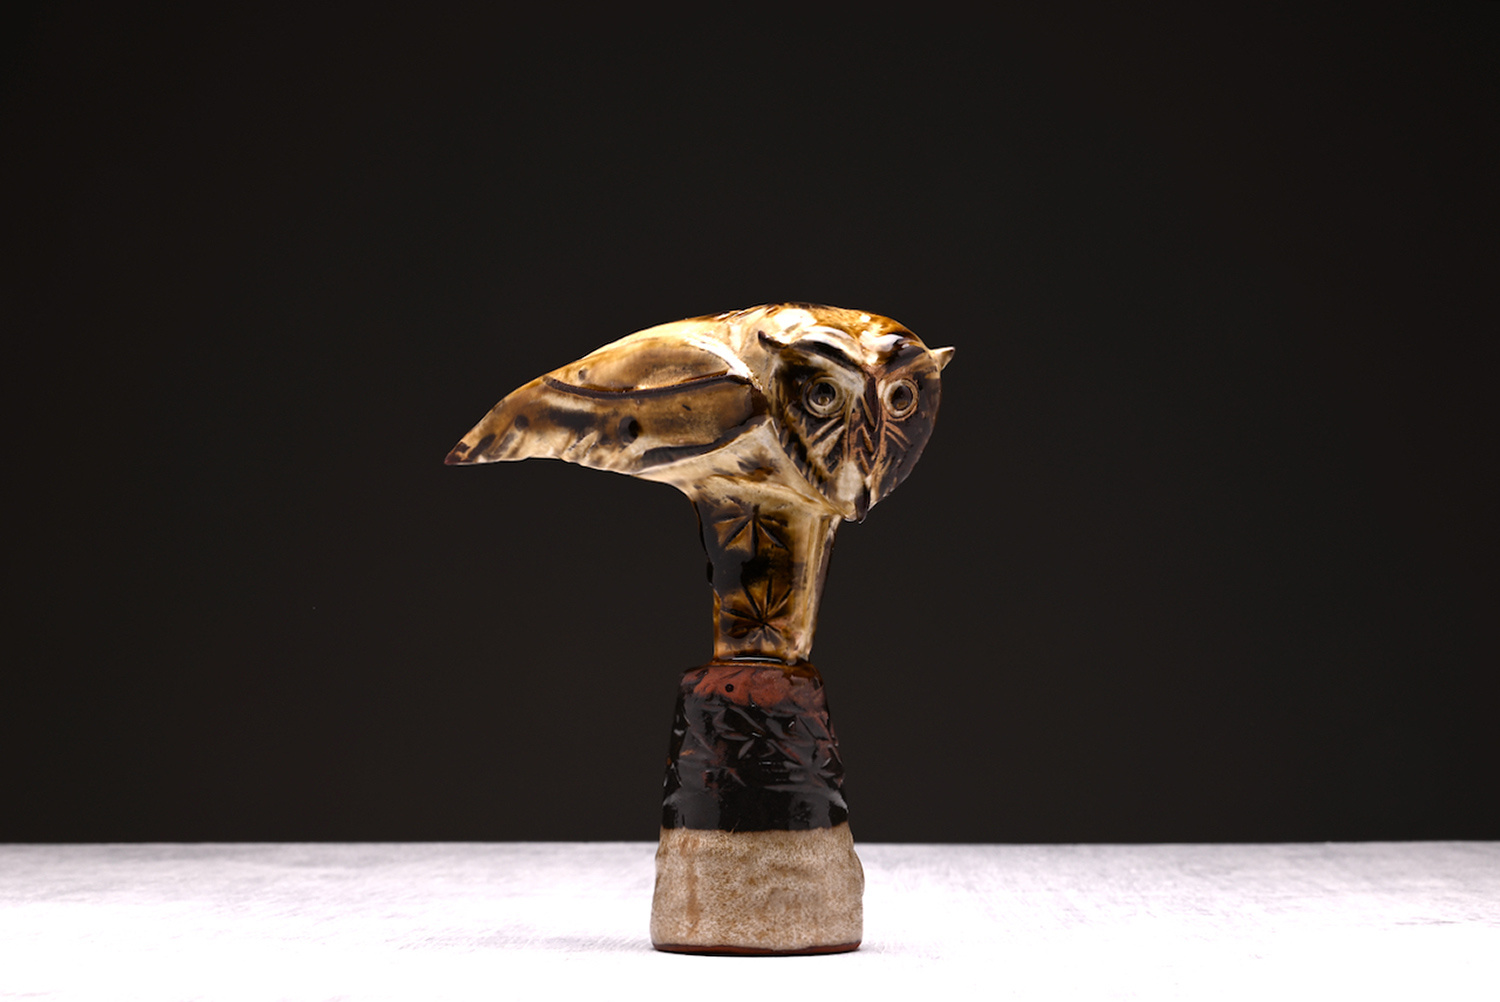 Owl by Jeremy James